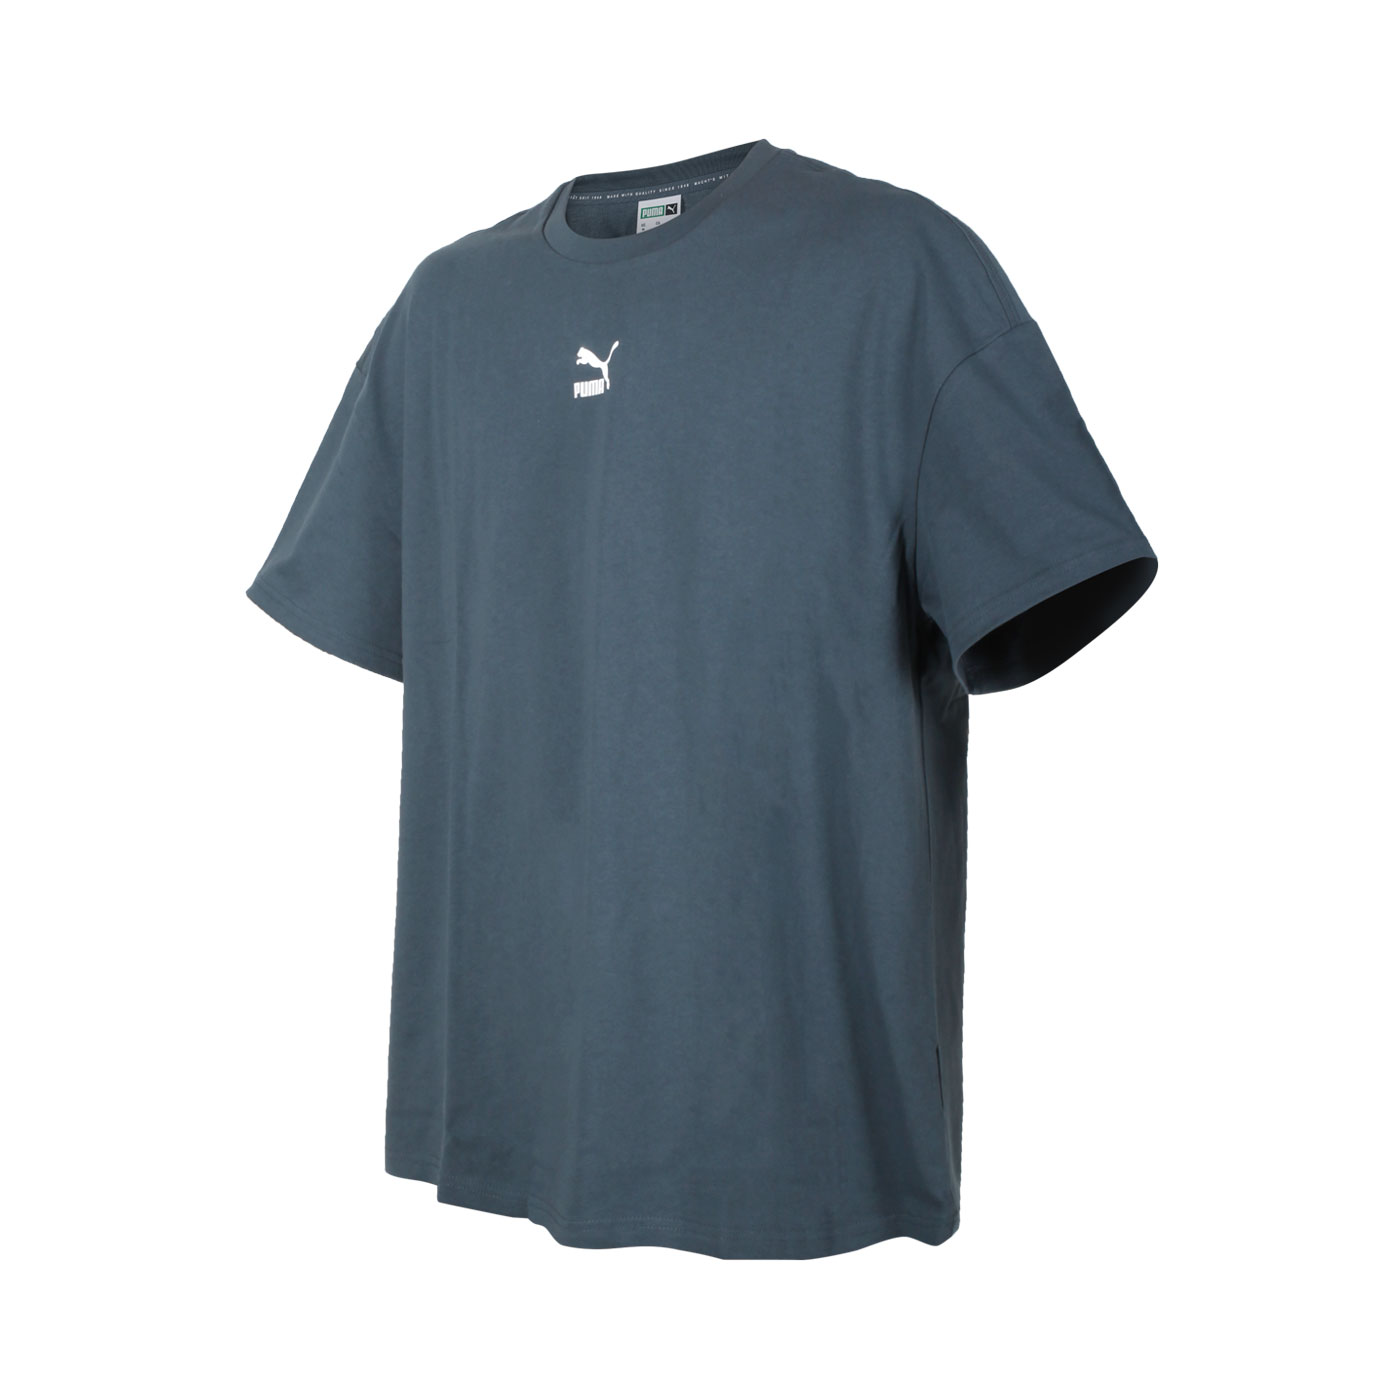 PUMA 男款流行系列Classics寬鬆短袖T恤 53213542 - 深墨灰白